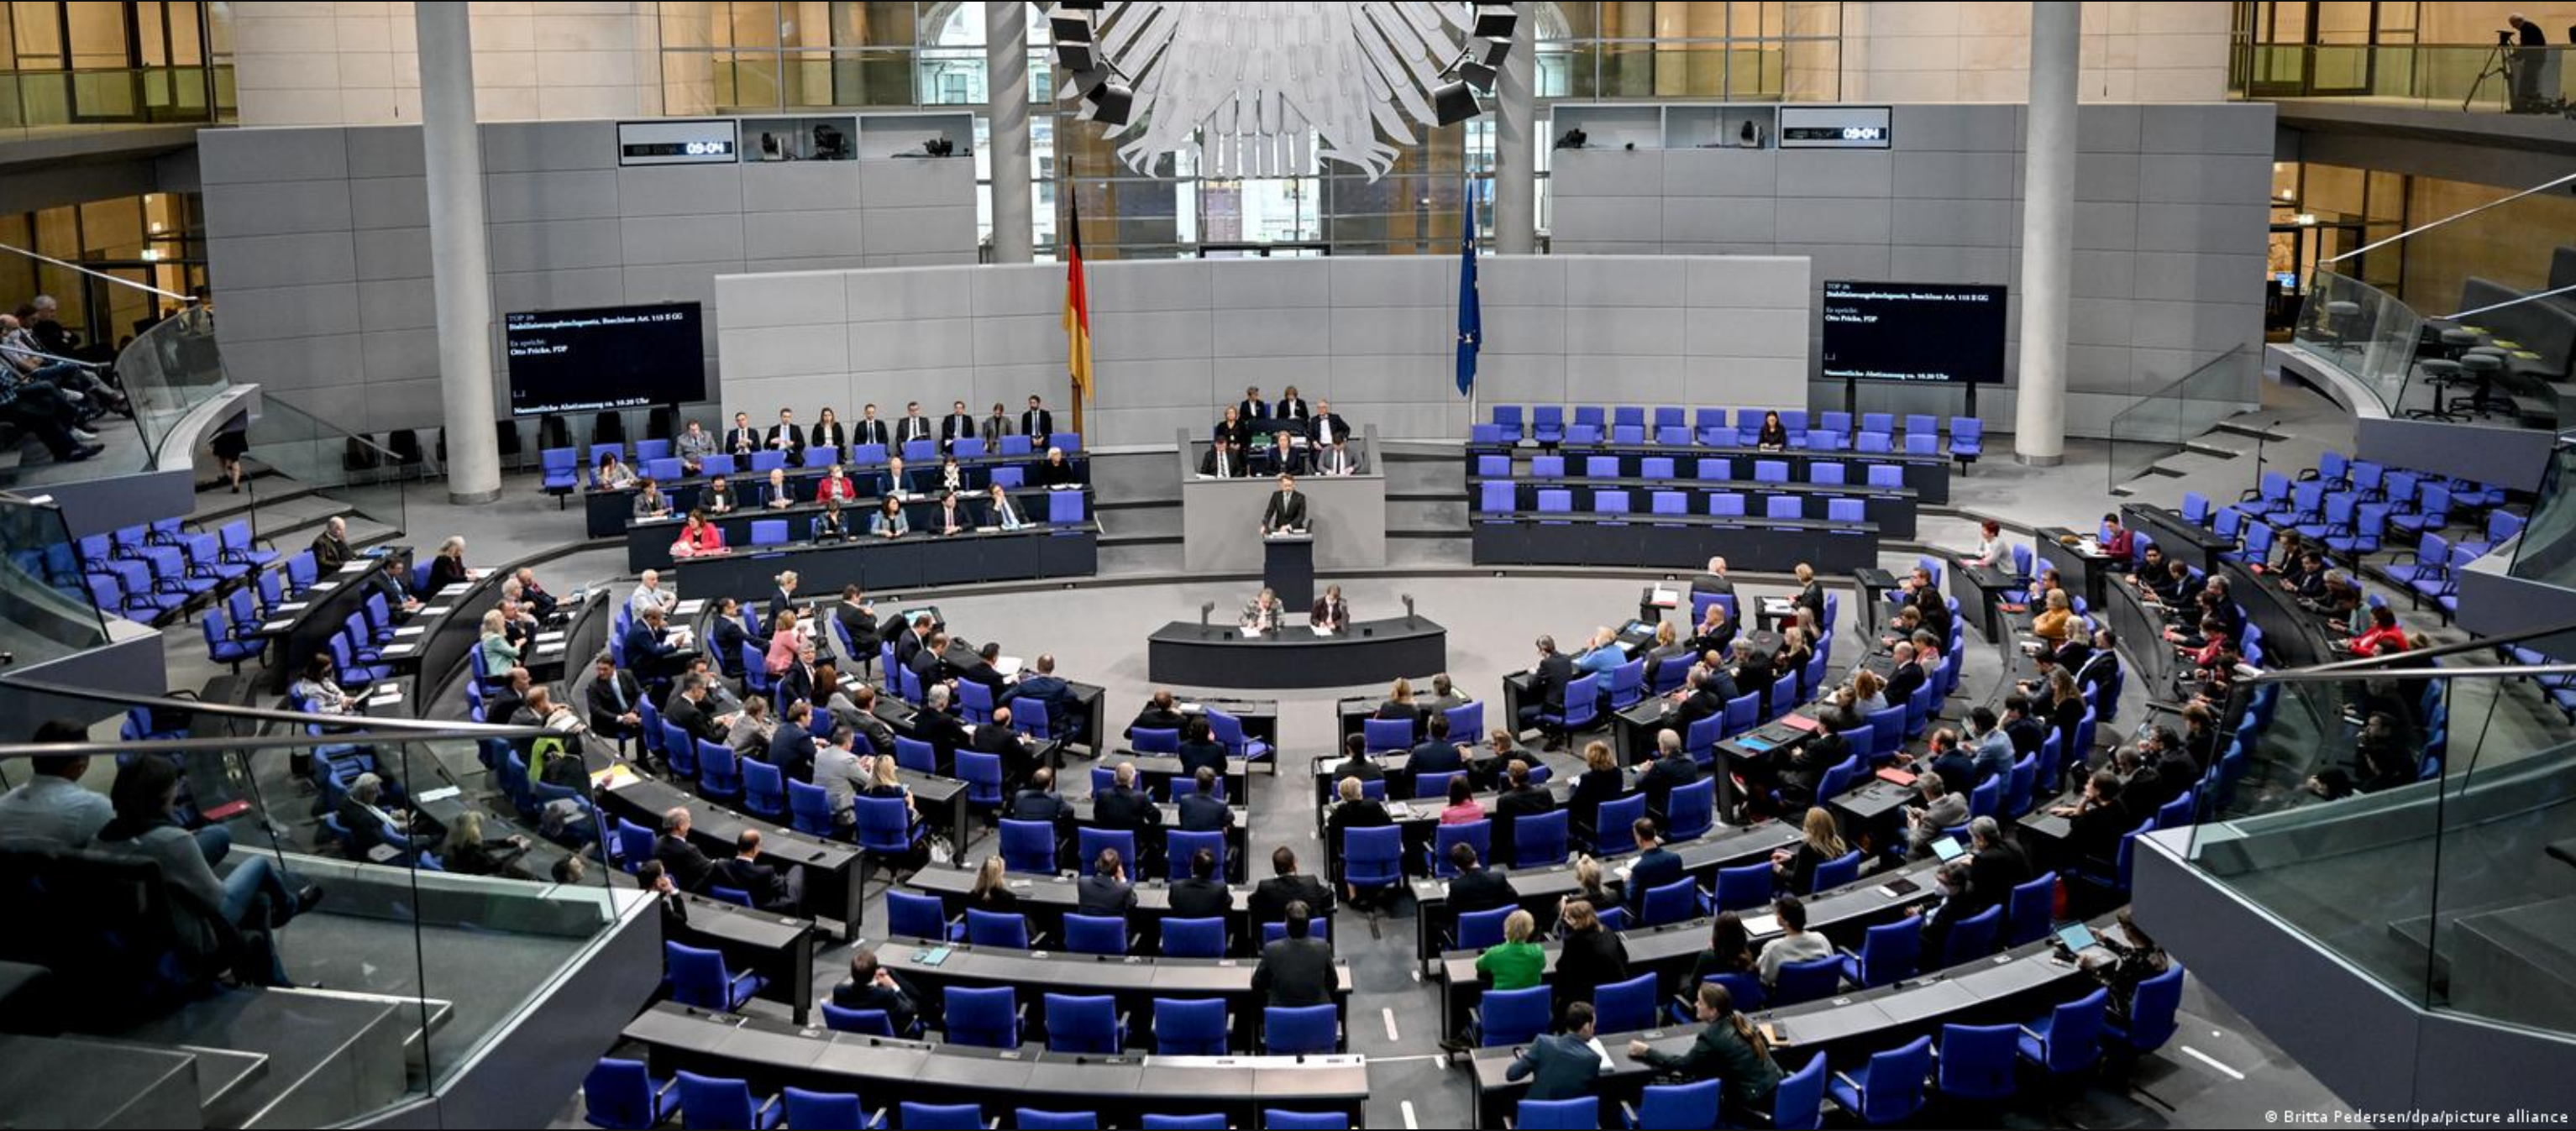 لایحه دولت ائتلافی آلمان برای حمایت از جنبش اعتراضی مردم ایران در پارلمان آلمان تصویب شد